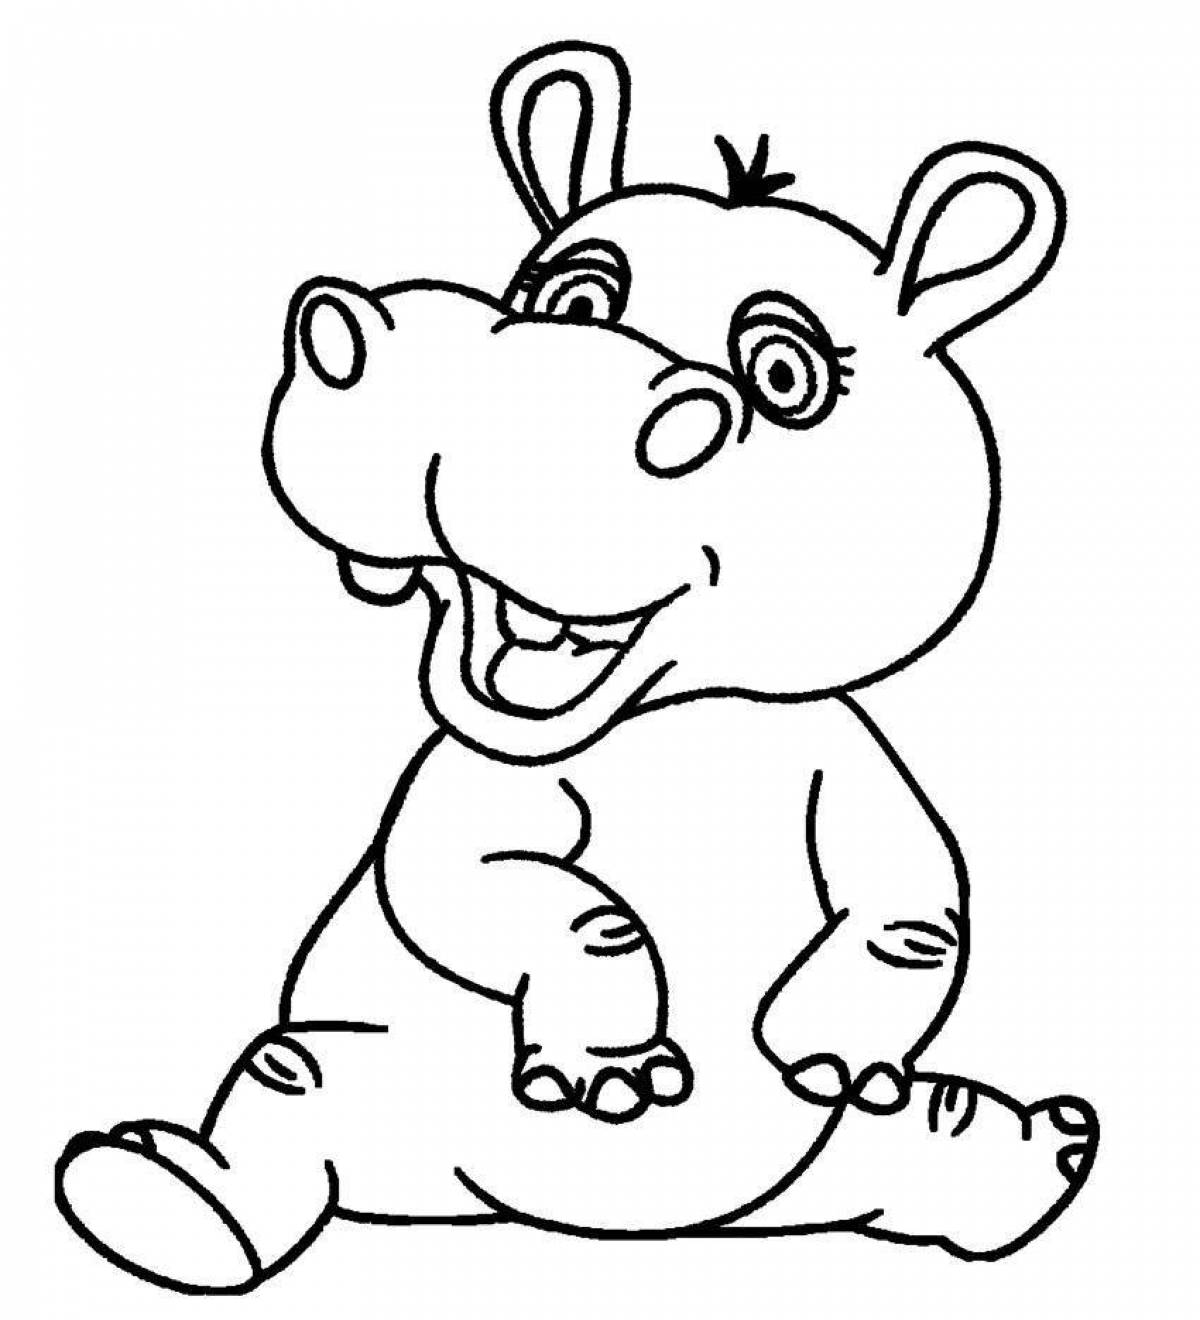 Adorable hippo coloring book